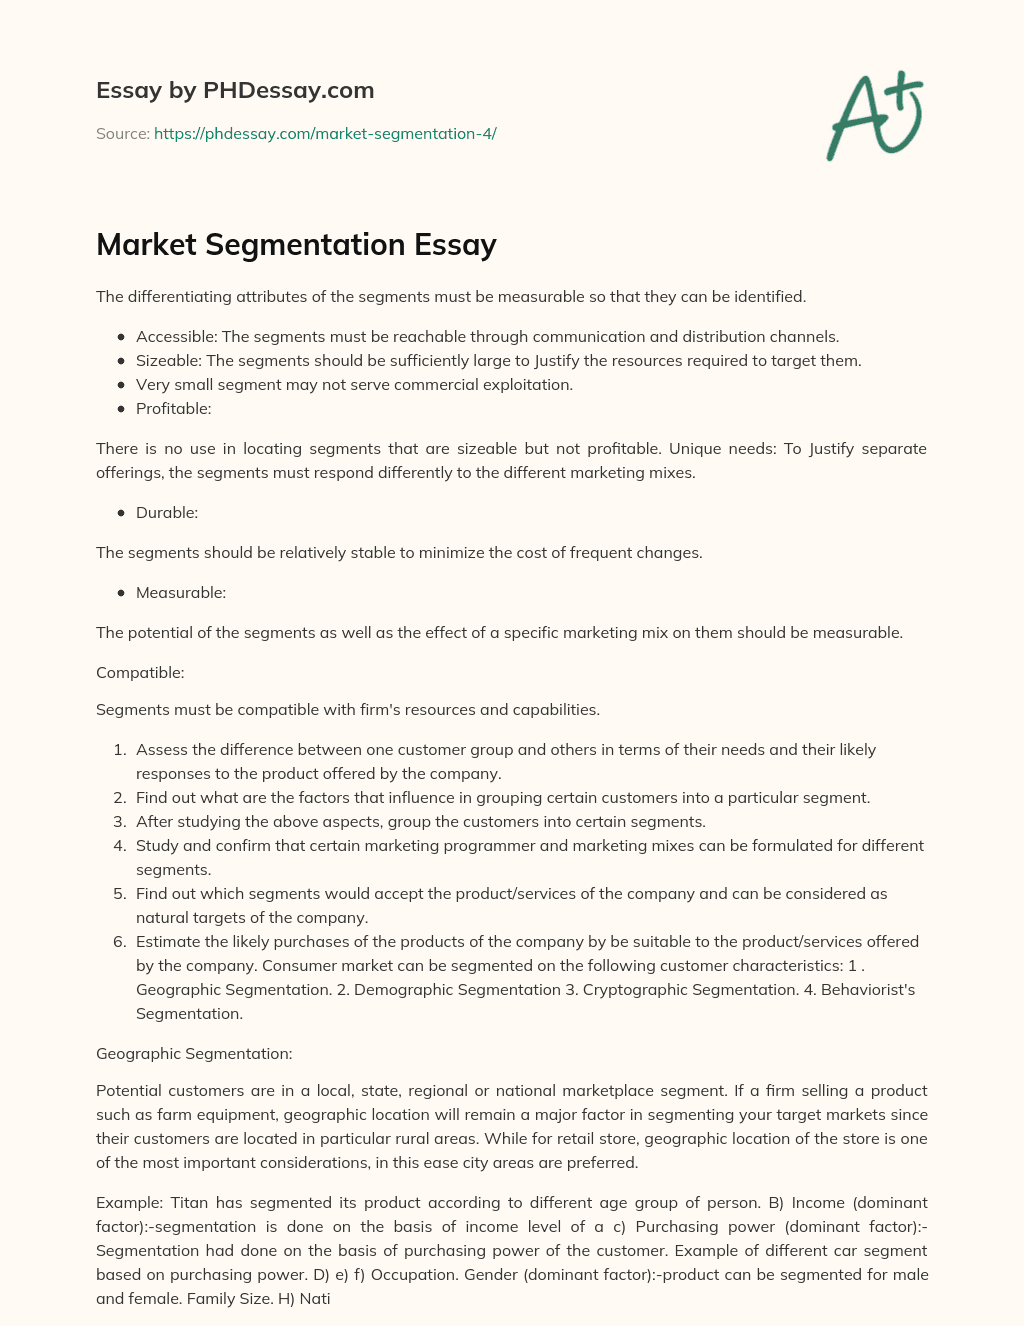 Market Segmentation Essay essay